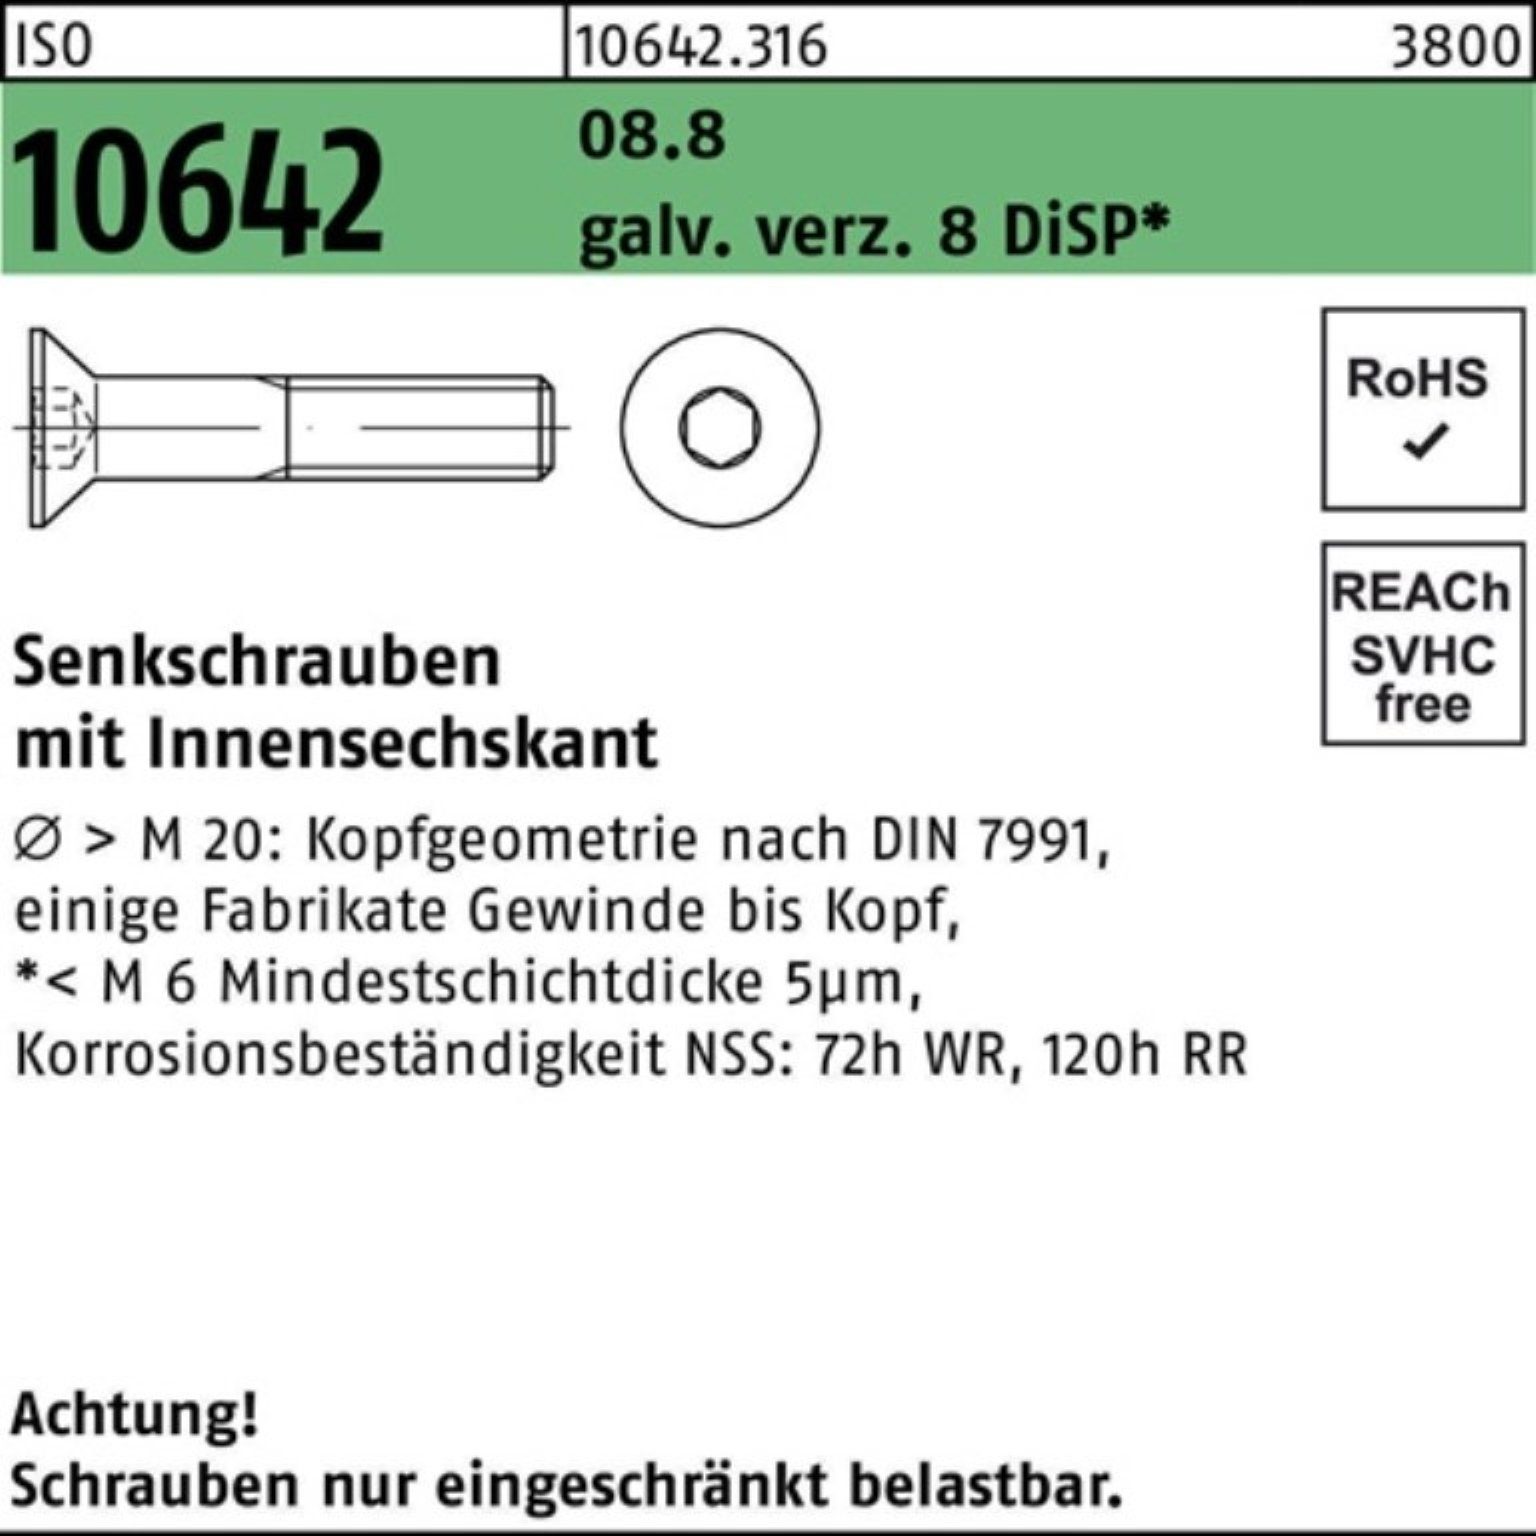 Pack 10642 ISO Innen-6kt Senkschraube 100er Senkschraube 8.8 galv.verz. Reyher M12x25 Di 8